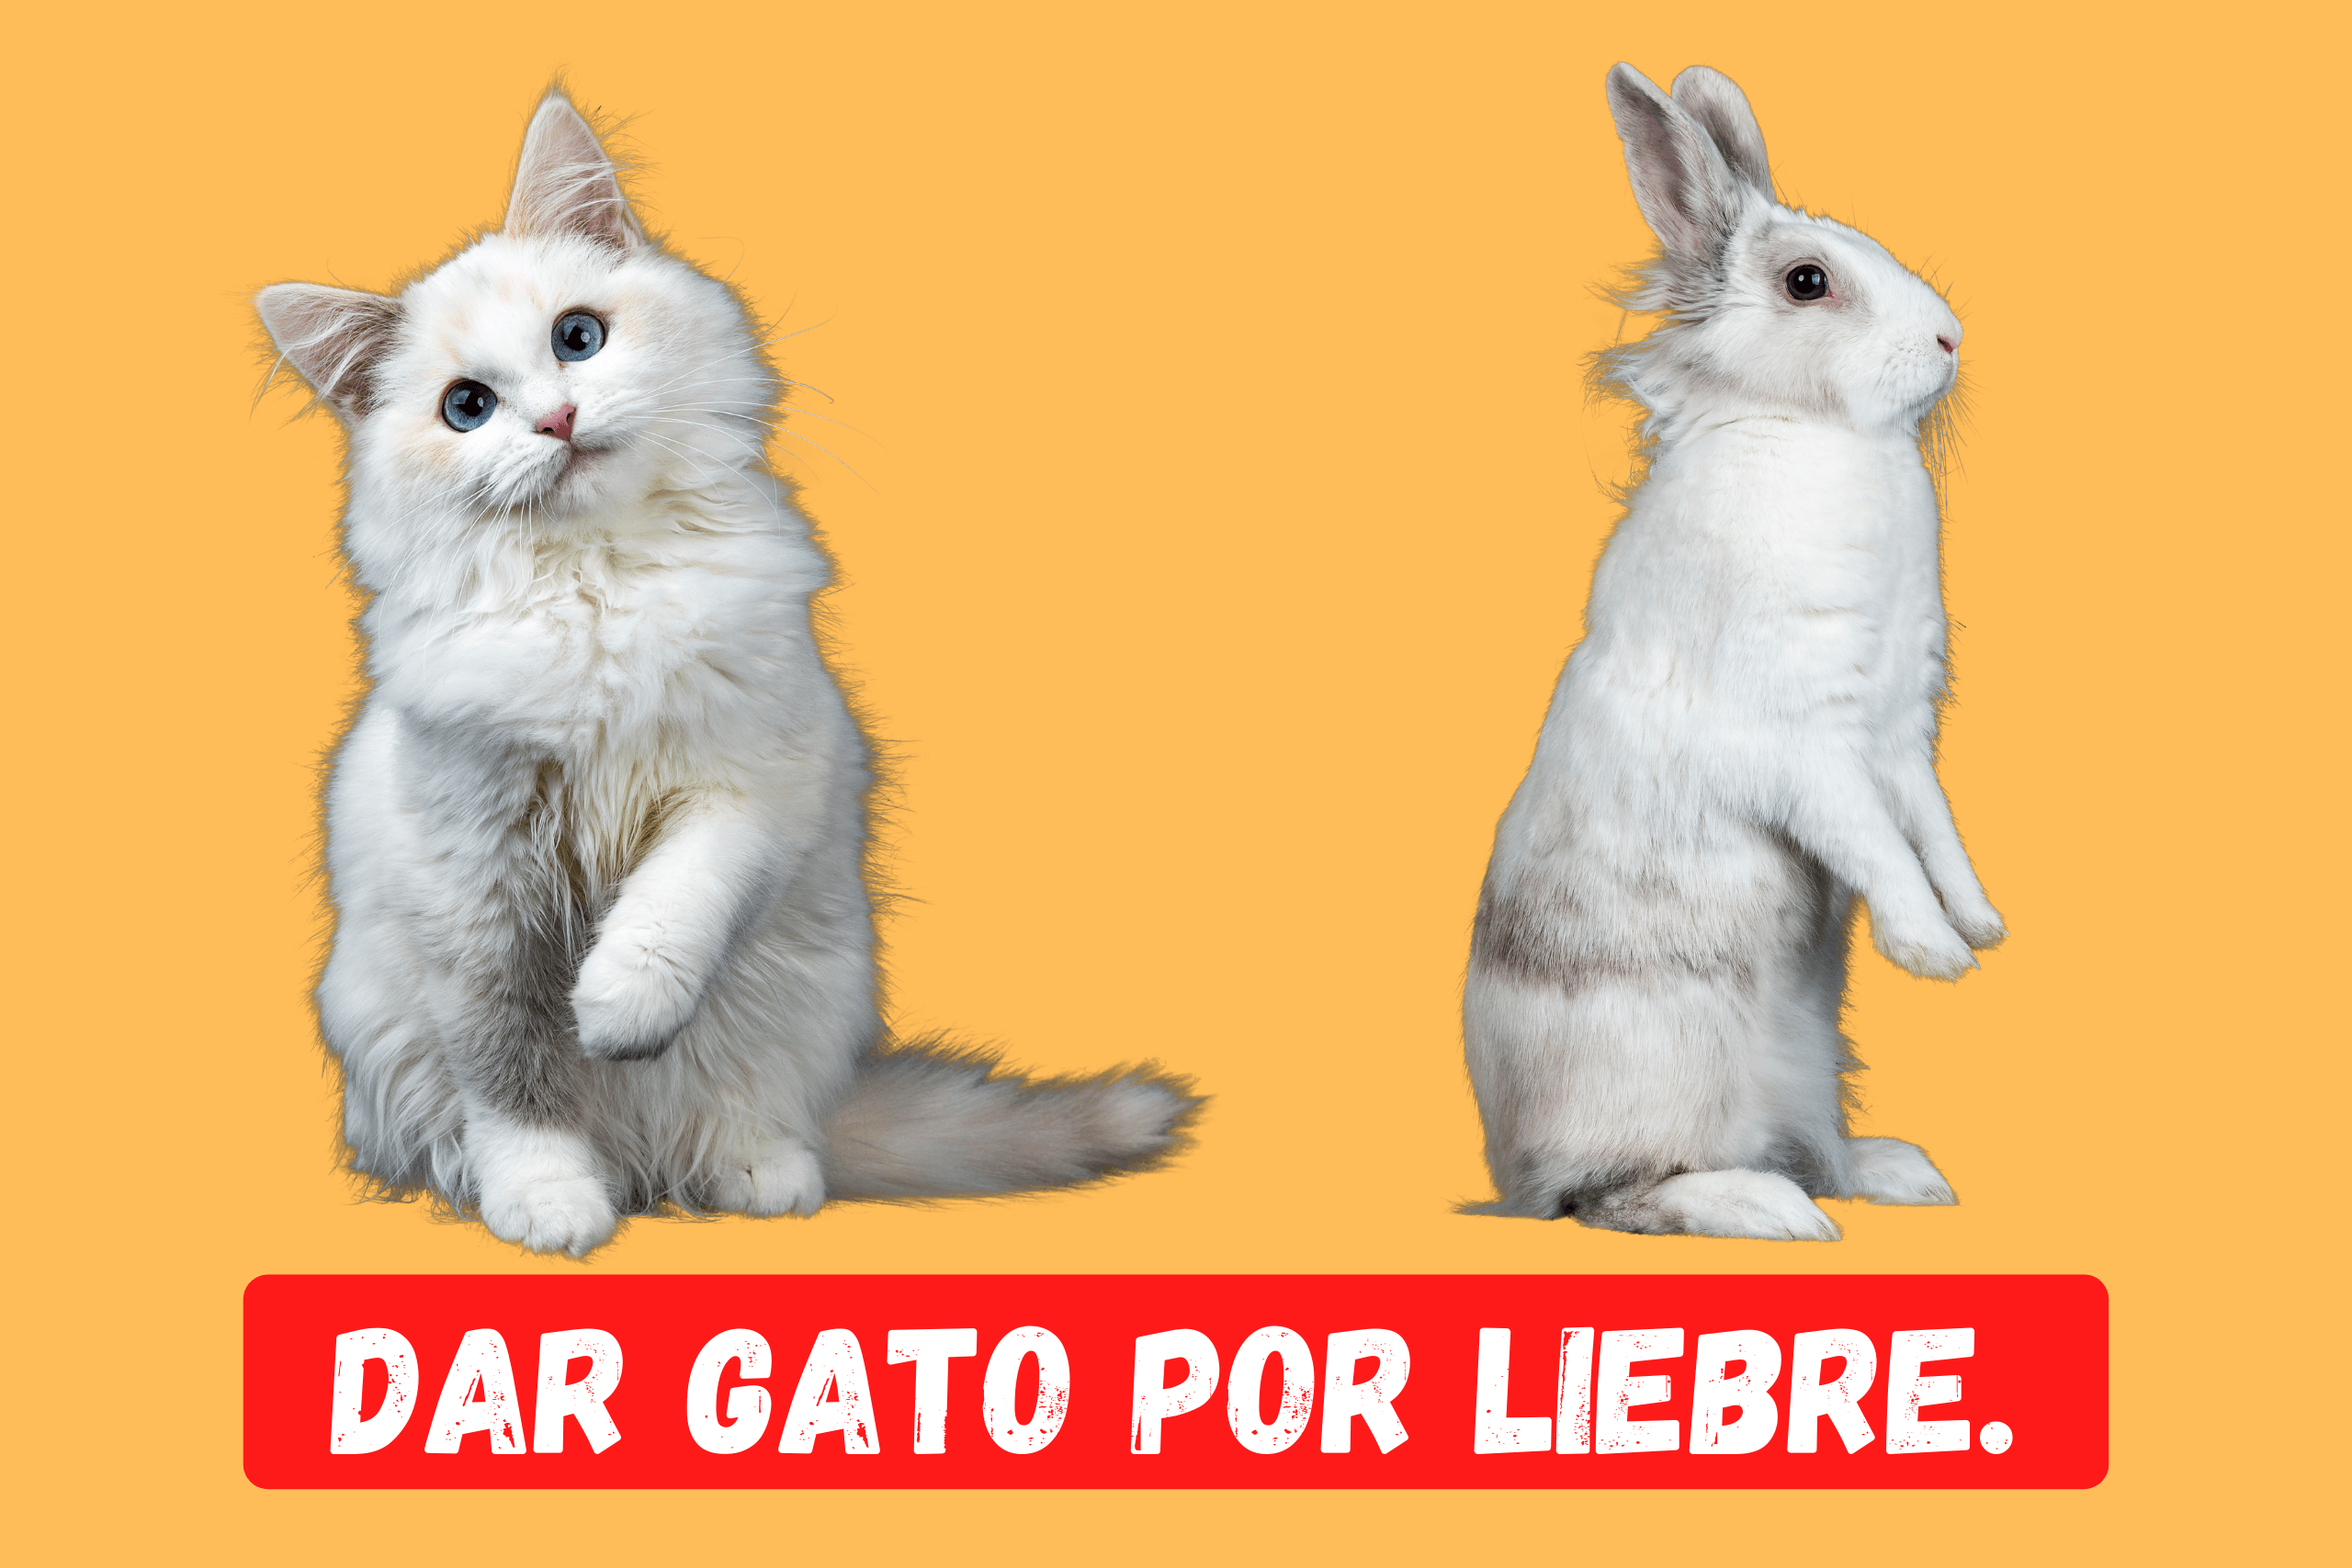 Saying of the day: Dar gato por liebre - Easy Español